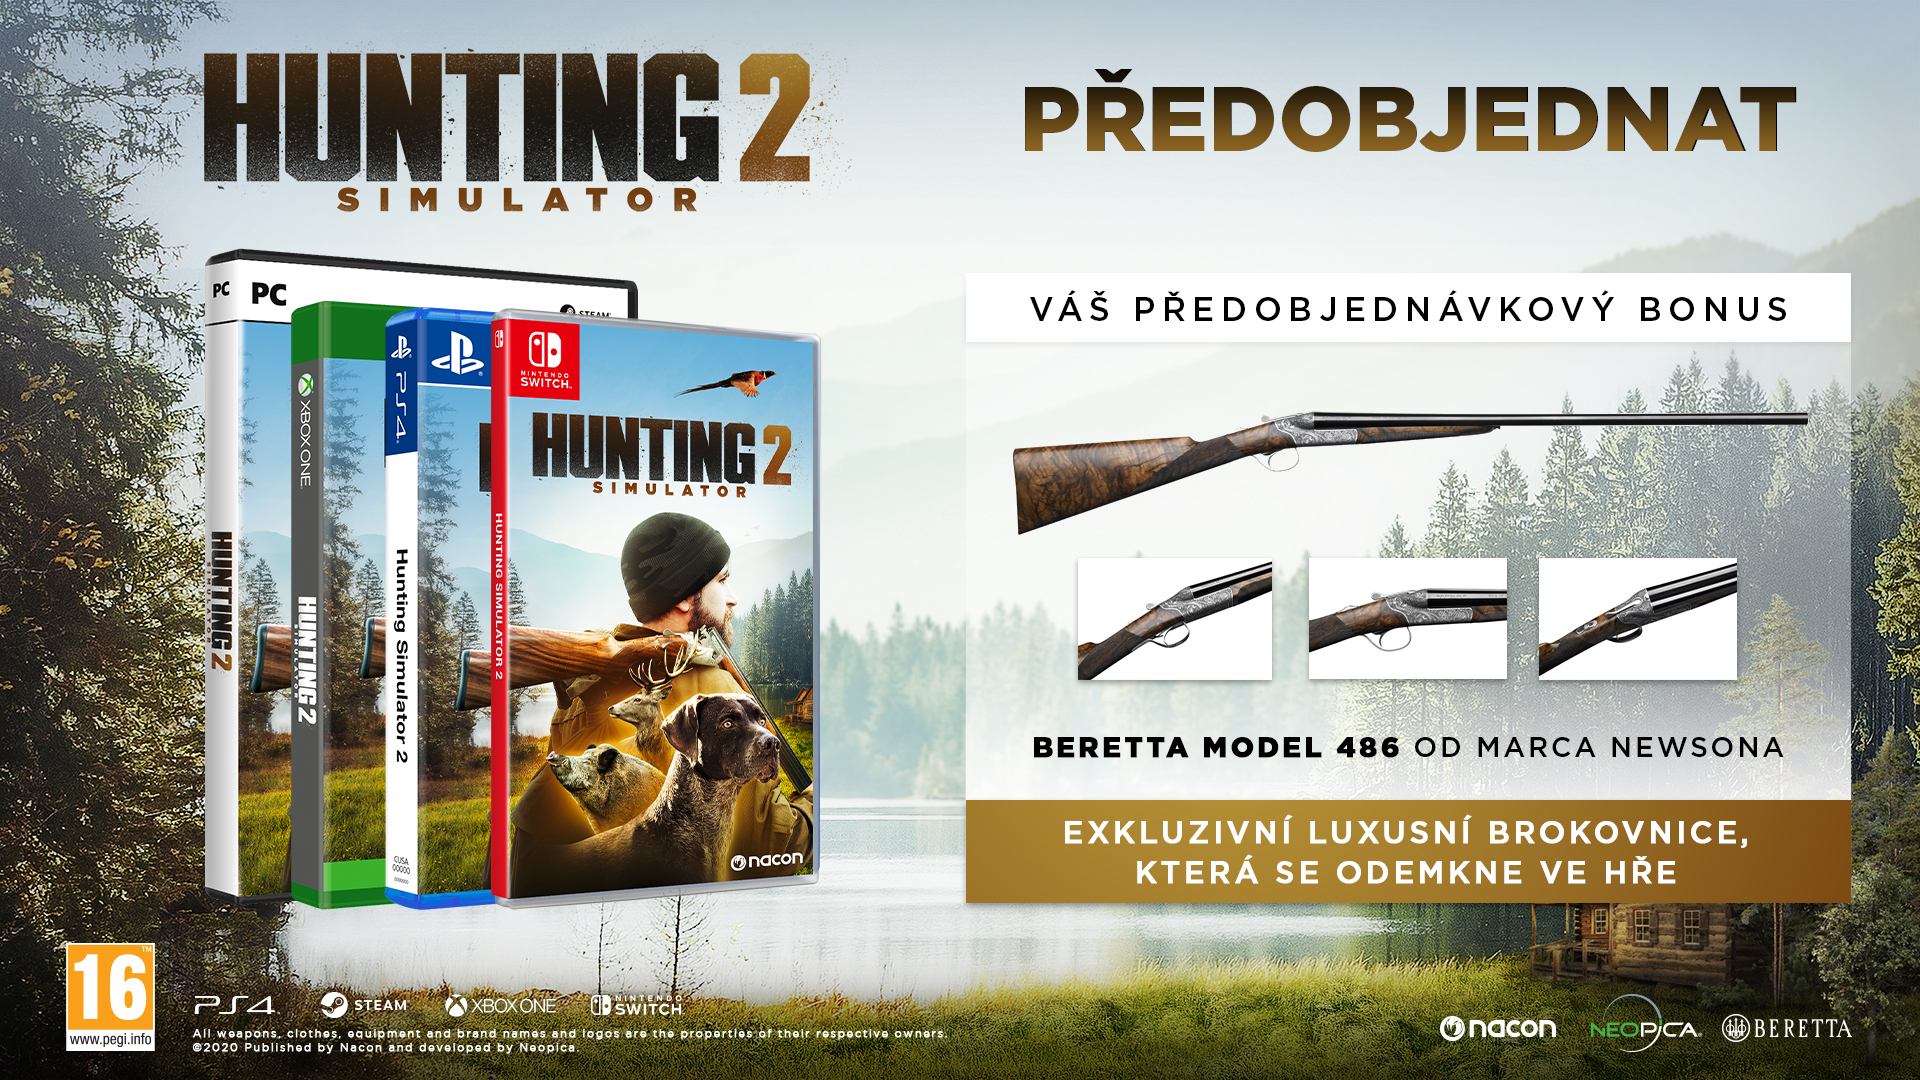 hunting simulator 2 genres